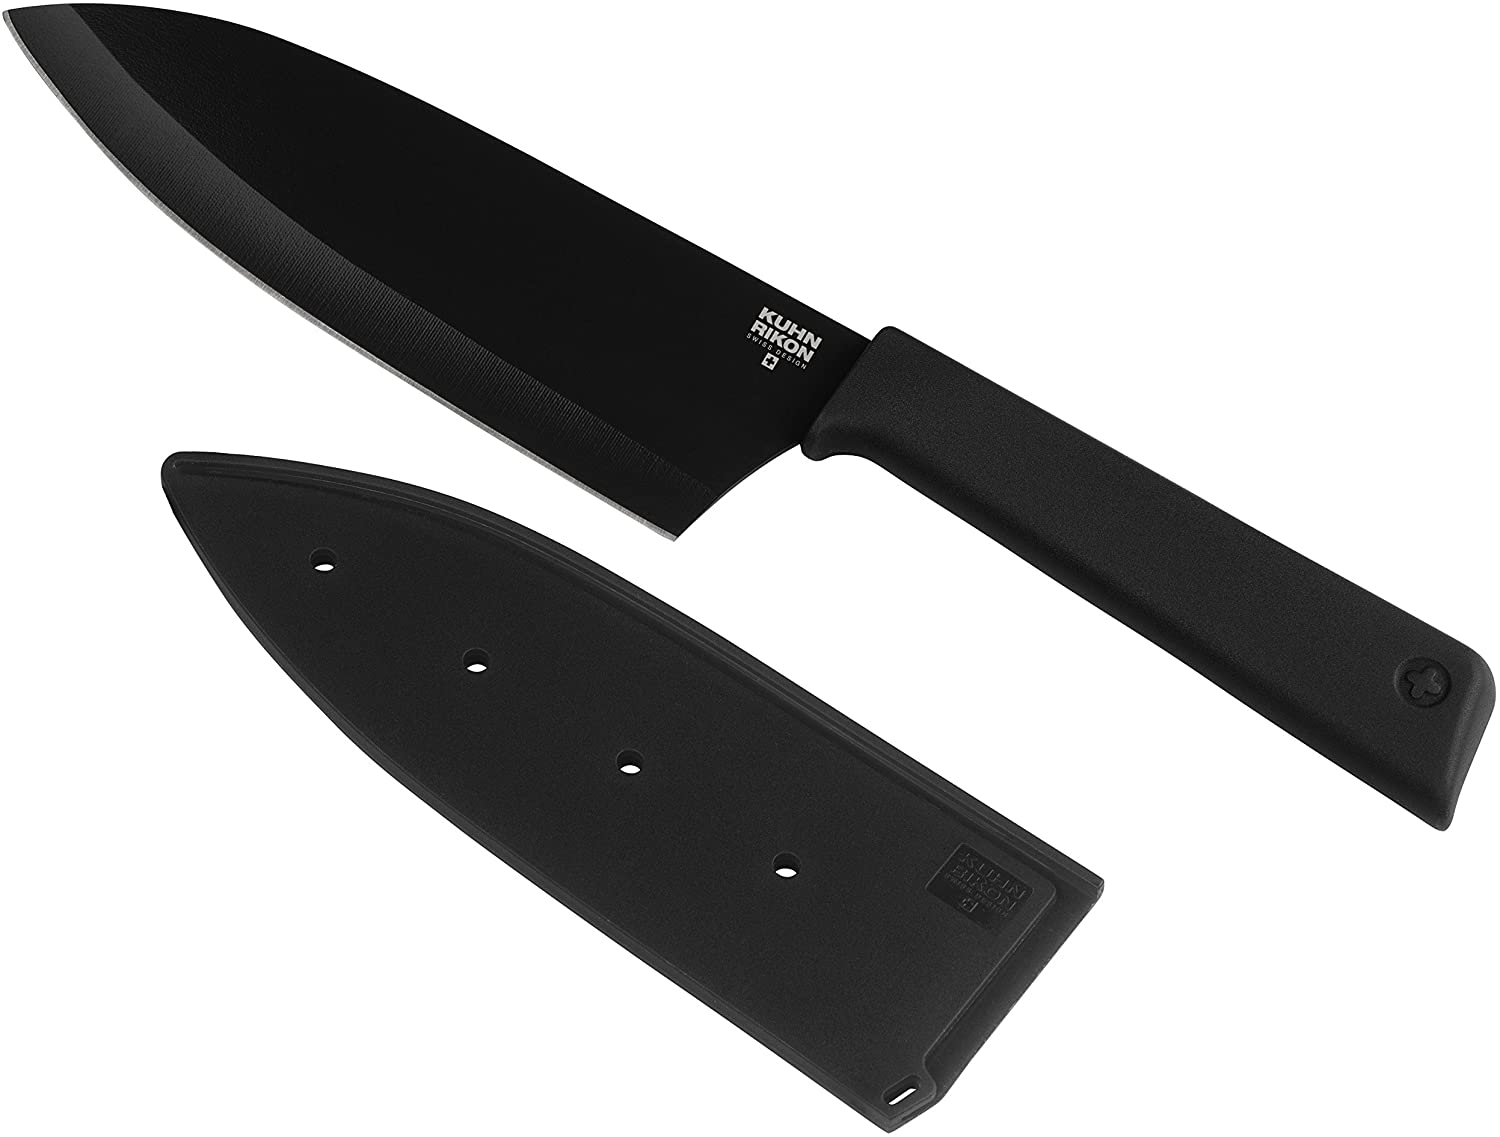 Kuhn Rikon Large Colori Plus Non-Stick Santoku Knife, Black